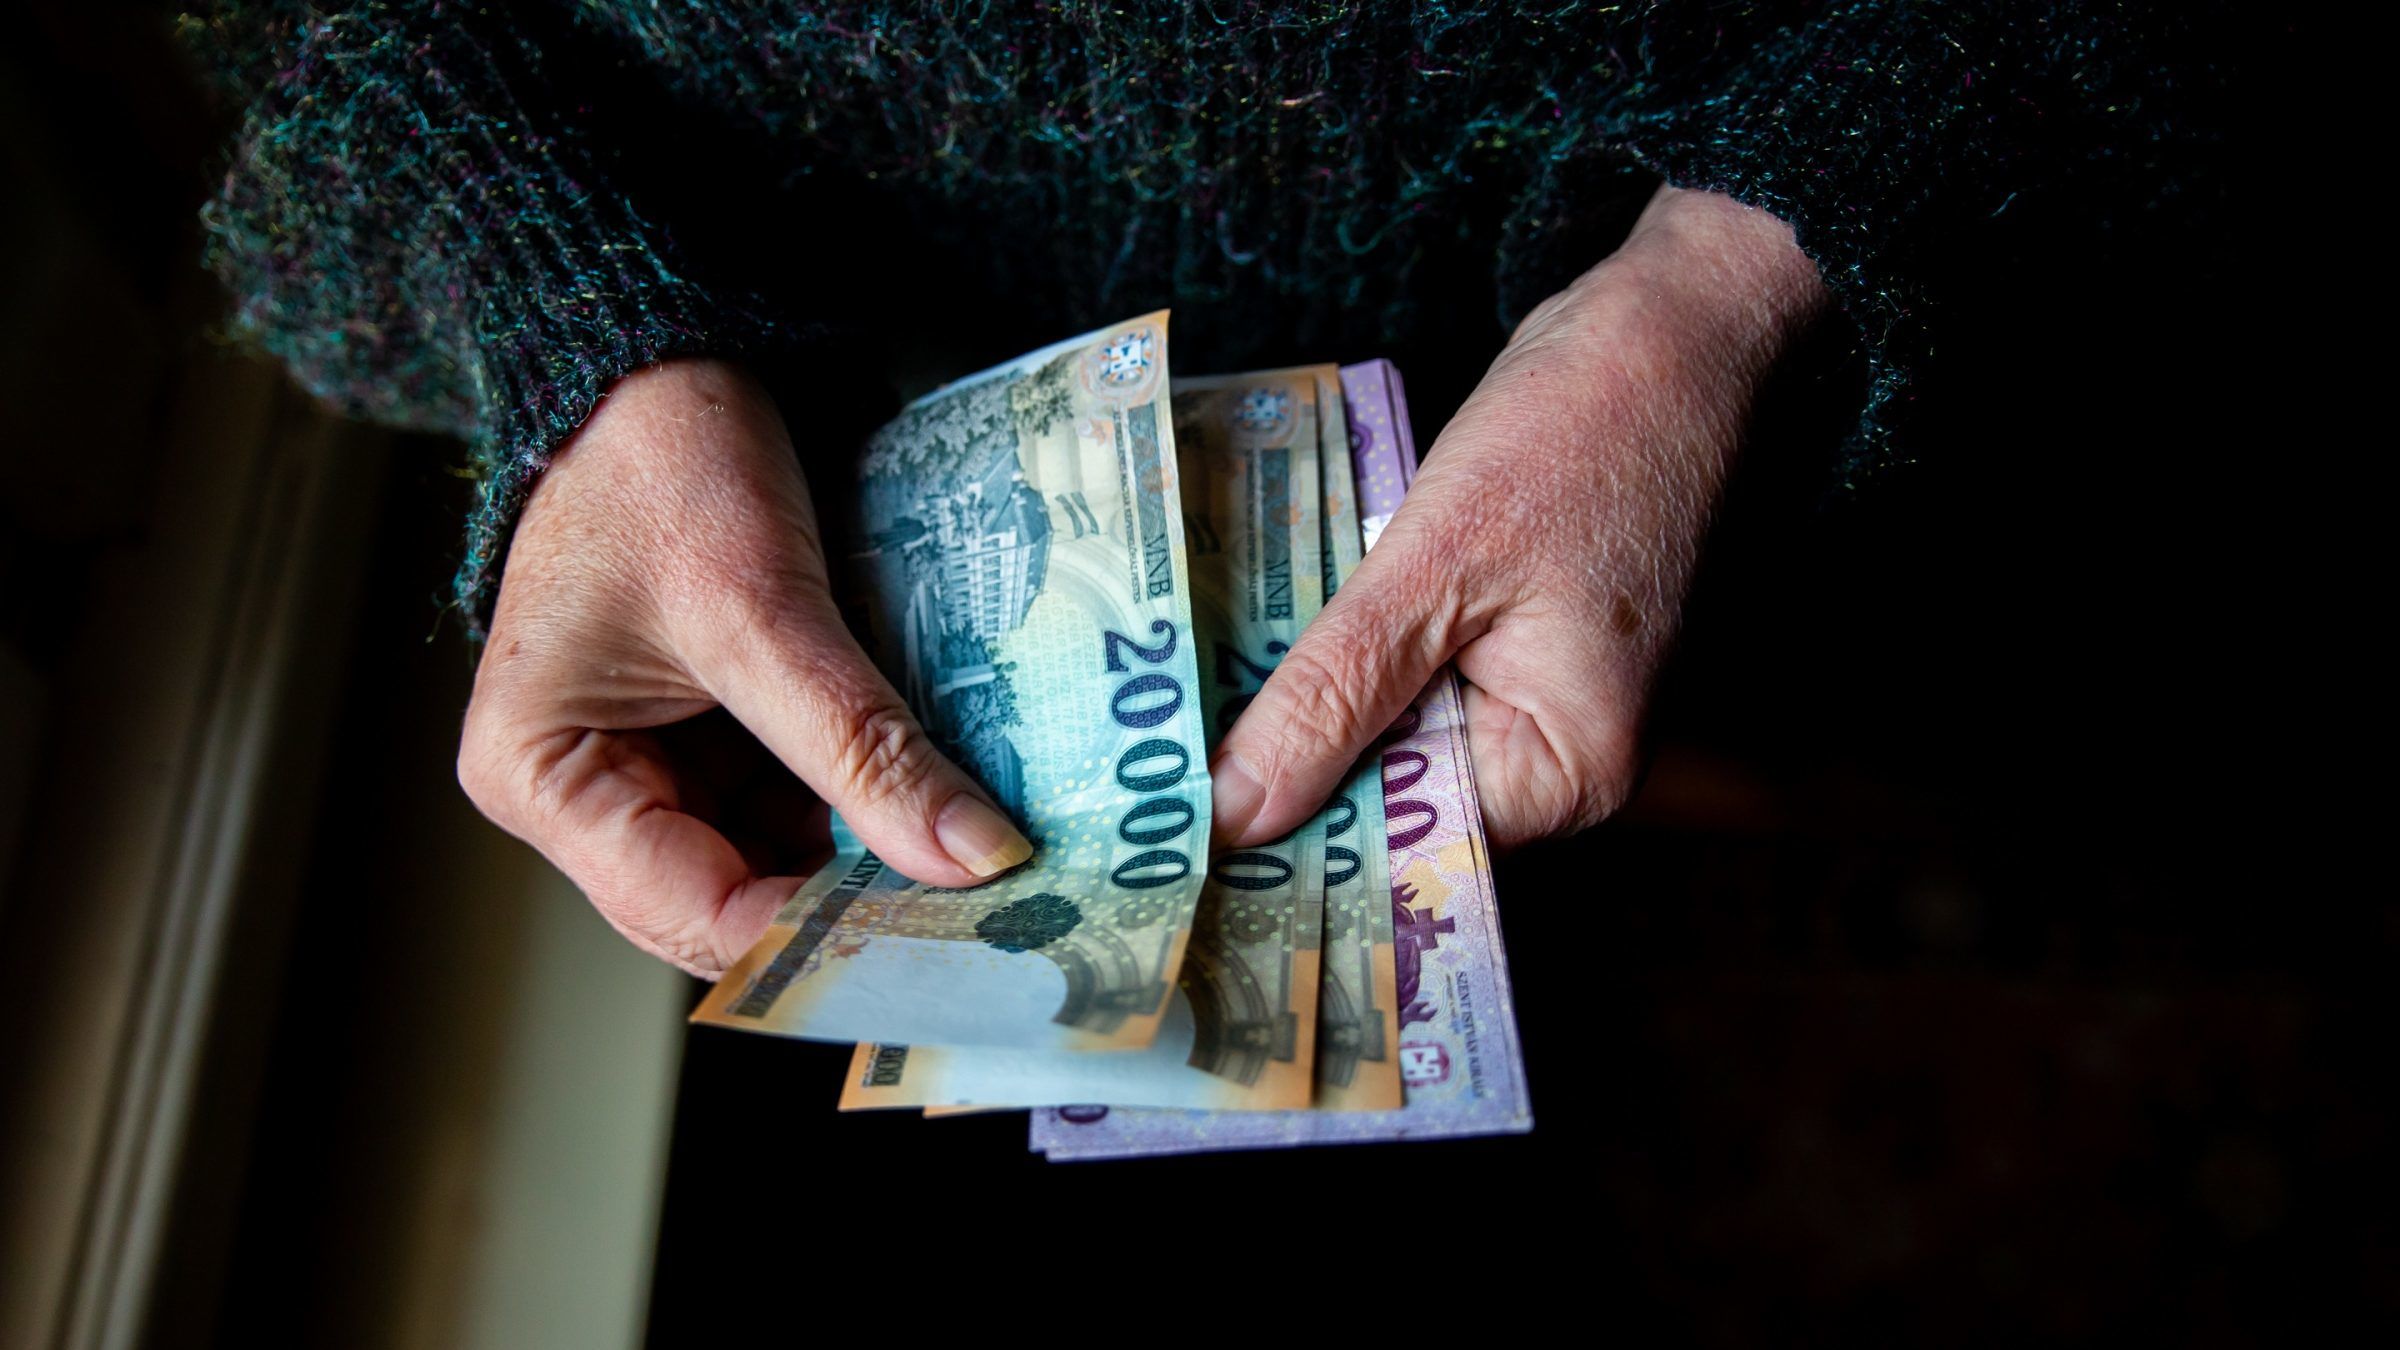 “Álcsatornás” trükkel próbálnak meg pénzt szerezni csalók Budapesten